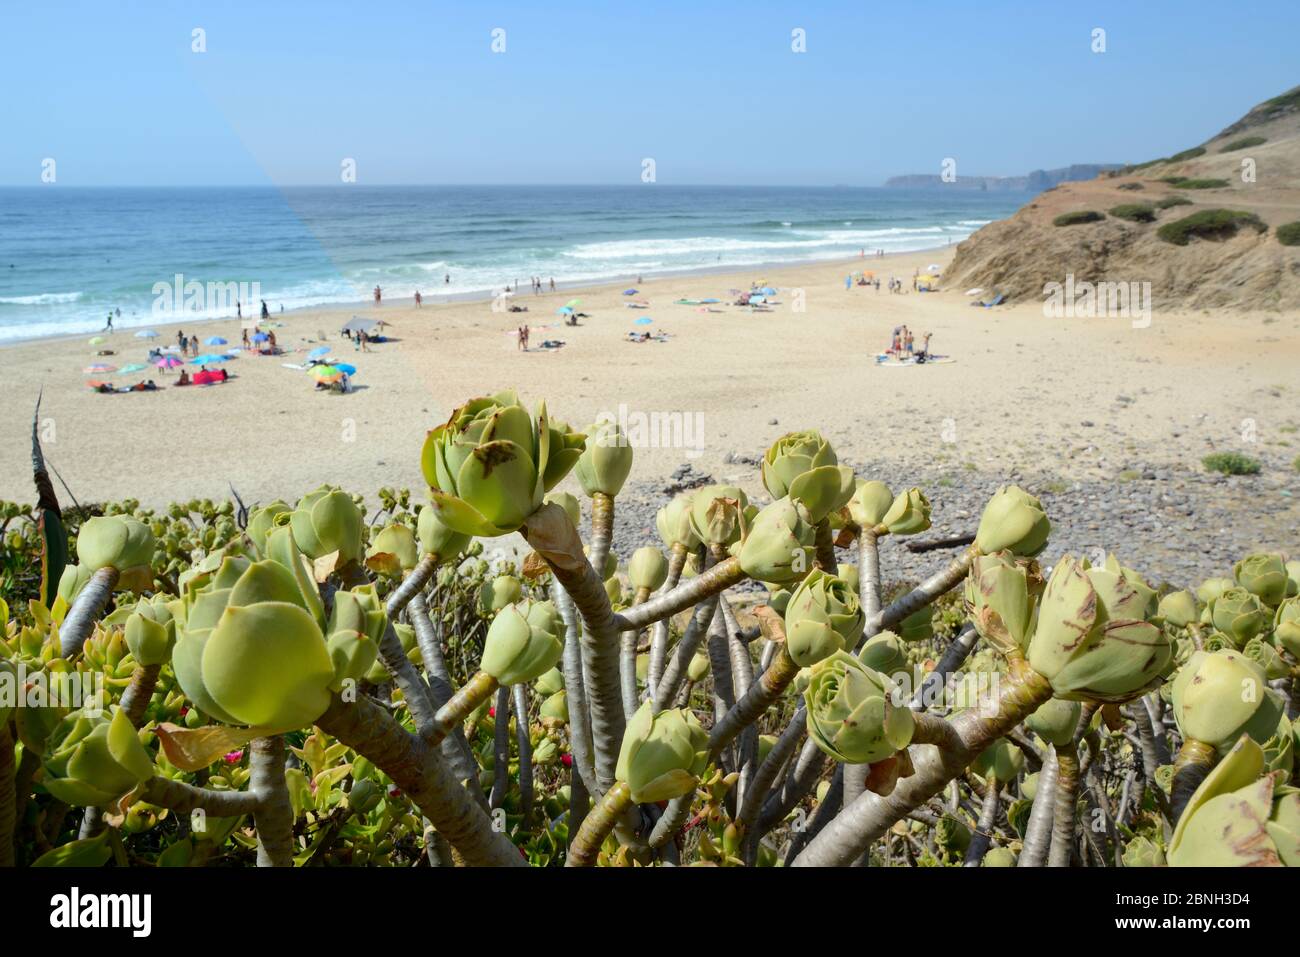 Baum Aeonium / Baum houseleek (Aeonium arboreum), eine eingeführte Art von den Kanaren wächst auf einer Küstenvorhöhe mit Blick auf einen Strand, Praia de Stockfoto